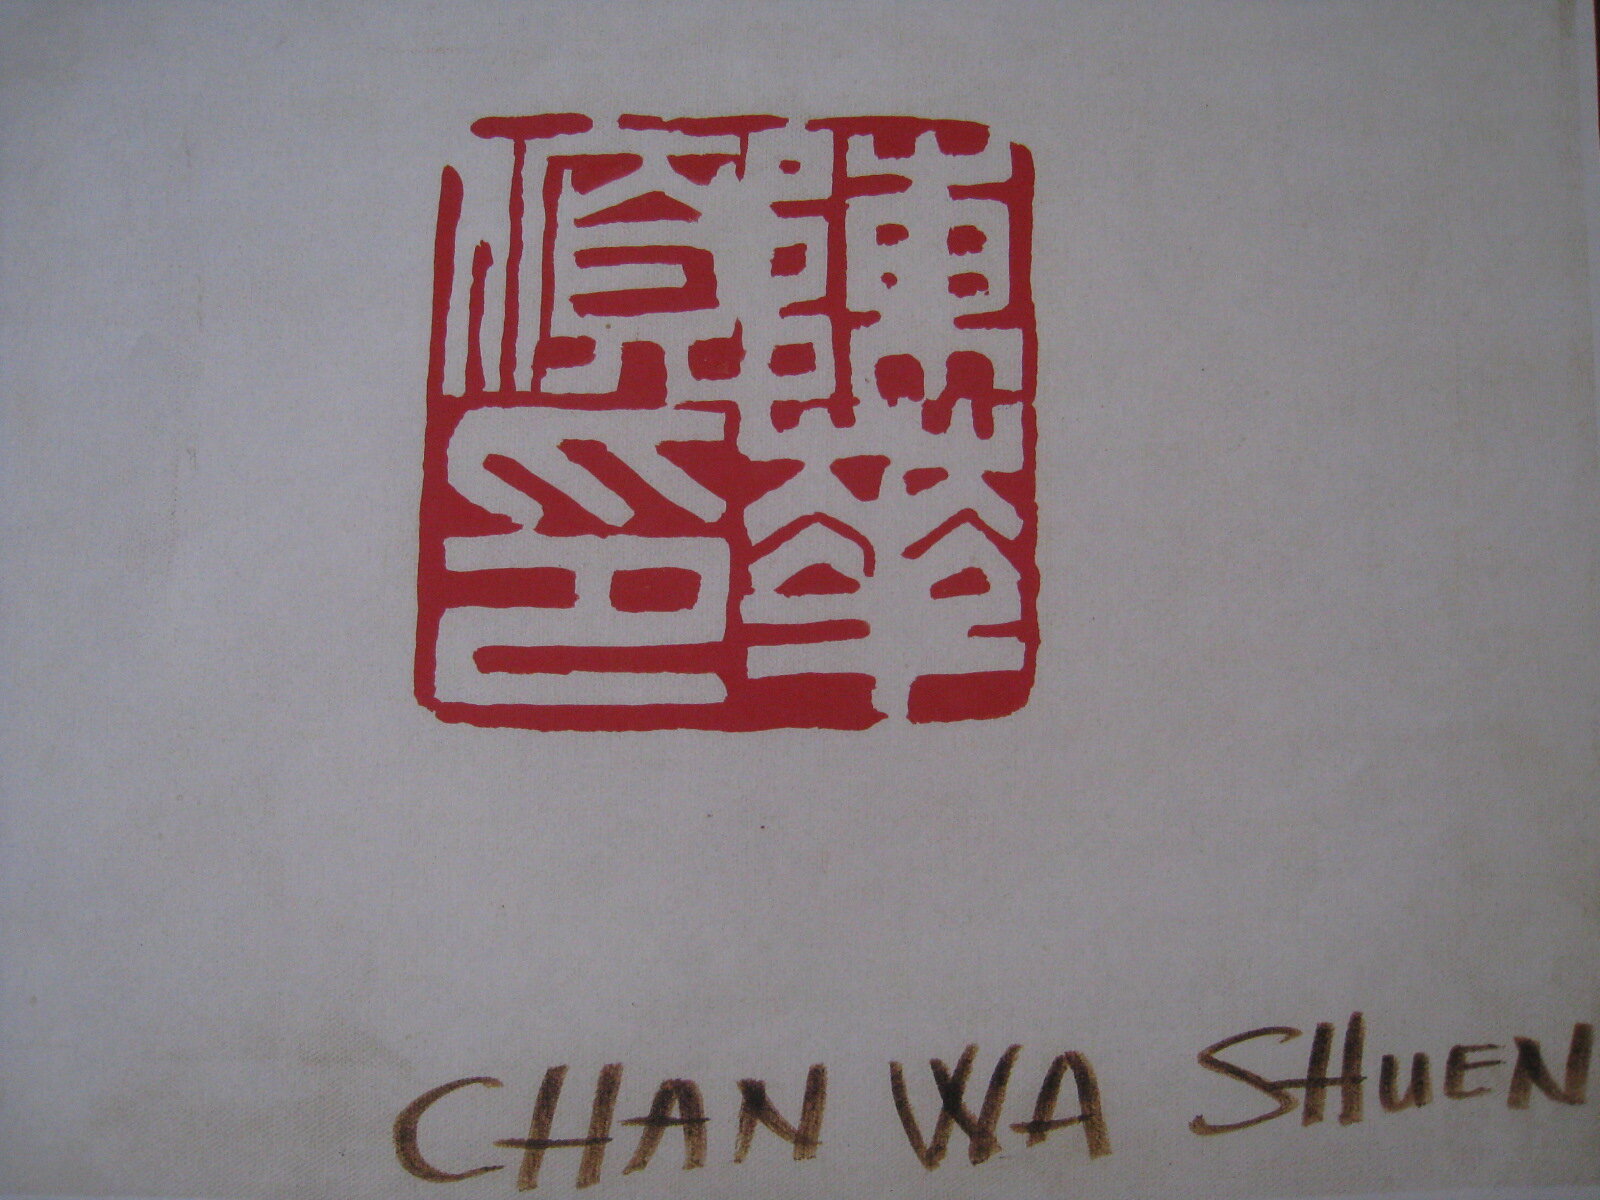 Chan Wa Shuen